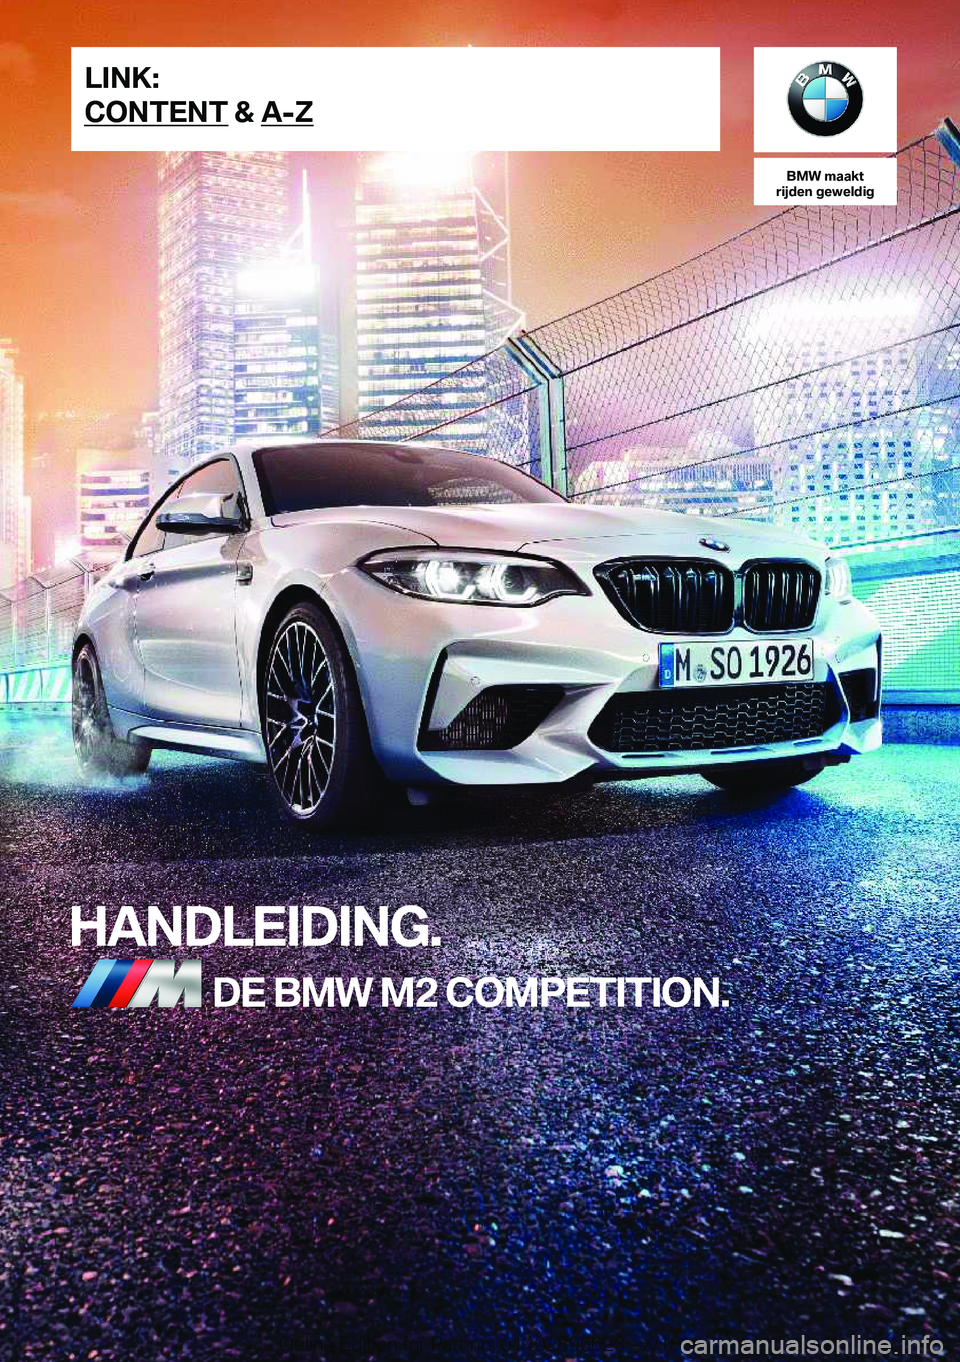 BMW M2 2019  Instructieboekjes (in Dutch) �B�M�W��m�a�a�k�t
�r�i�j�d�e�n��g�e�w�e�l�d�i�g
�H�A�N�D�L�E�I�D�I�N�G�.�D�E��B�M�W��M�2��C�O�M�P�E�T�I�T�I�O�N�.�L�I�N�K�:
�C�O�N�T�E�N�T��&��A�-�;�O�n�l�i�n�e��E�d�i�t�i�o�n��f�o�r��P�a�r�